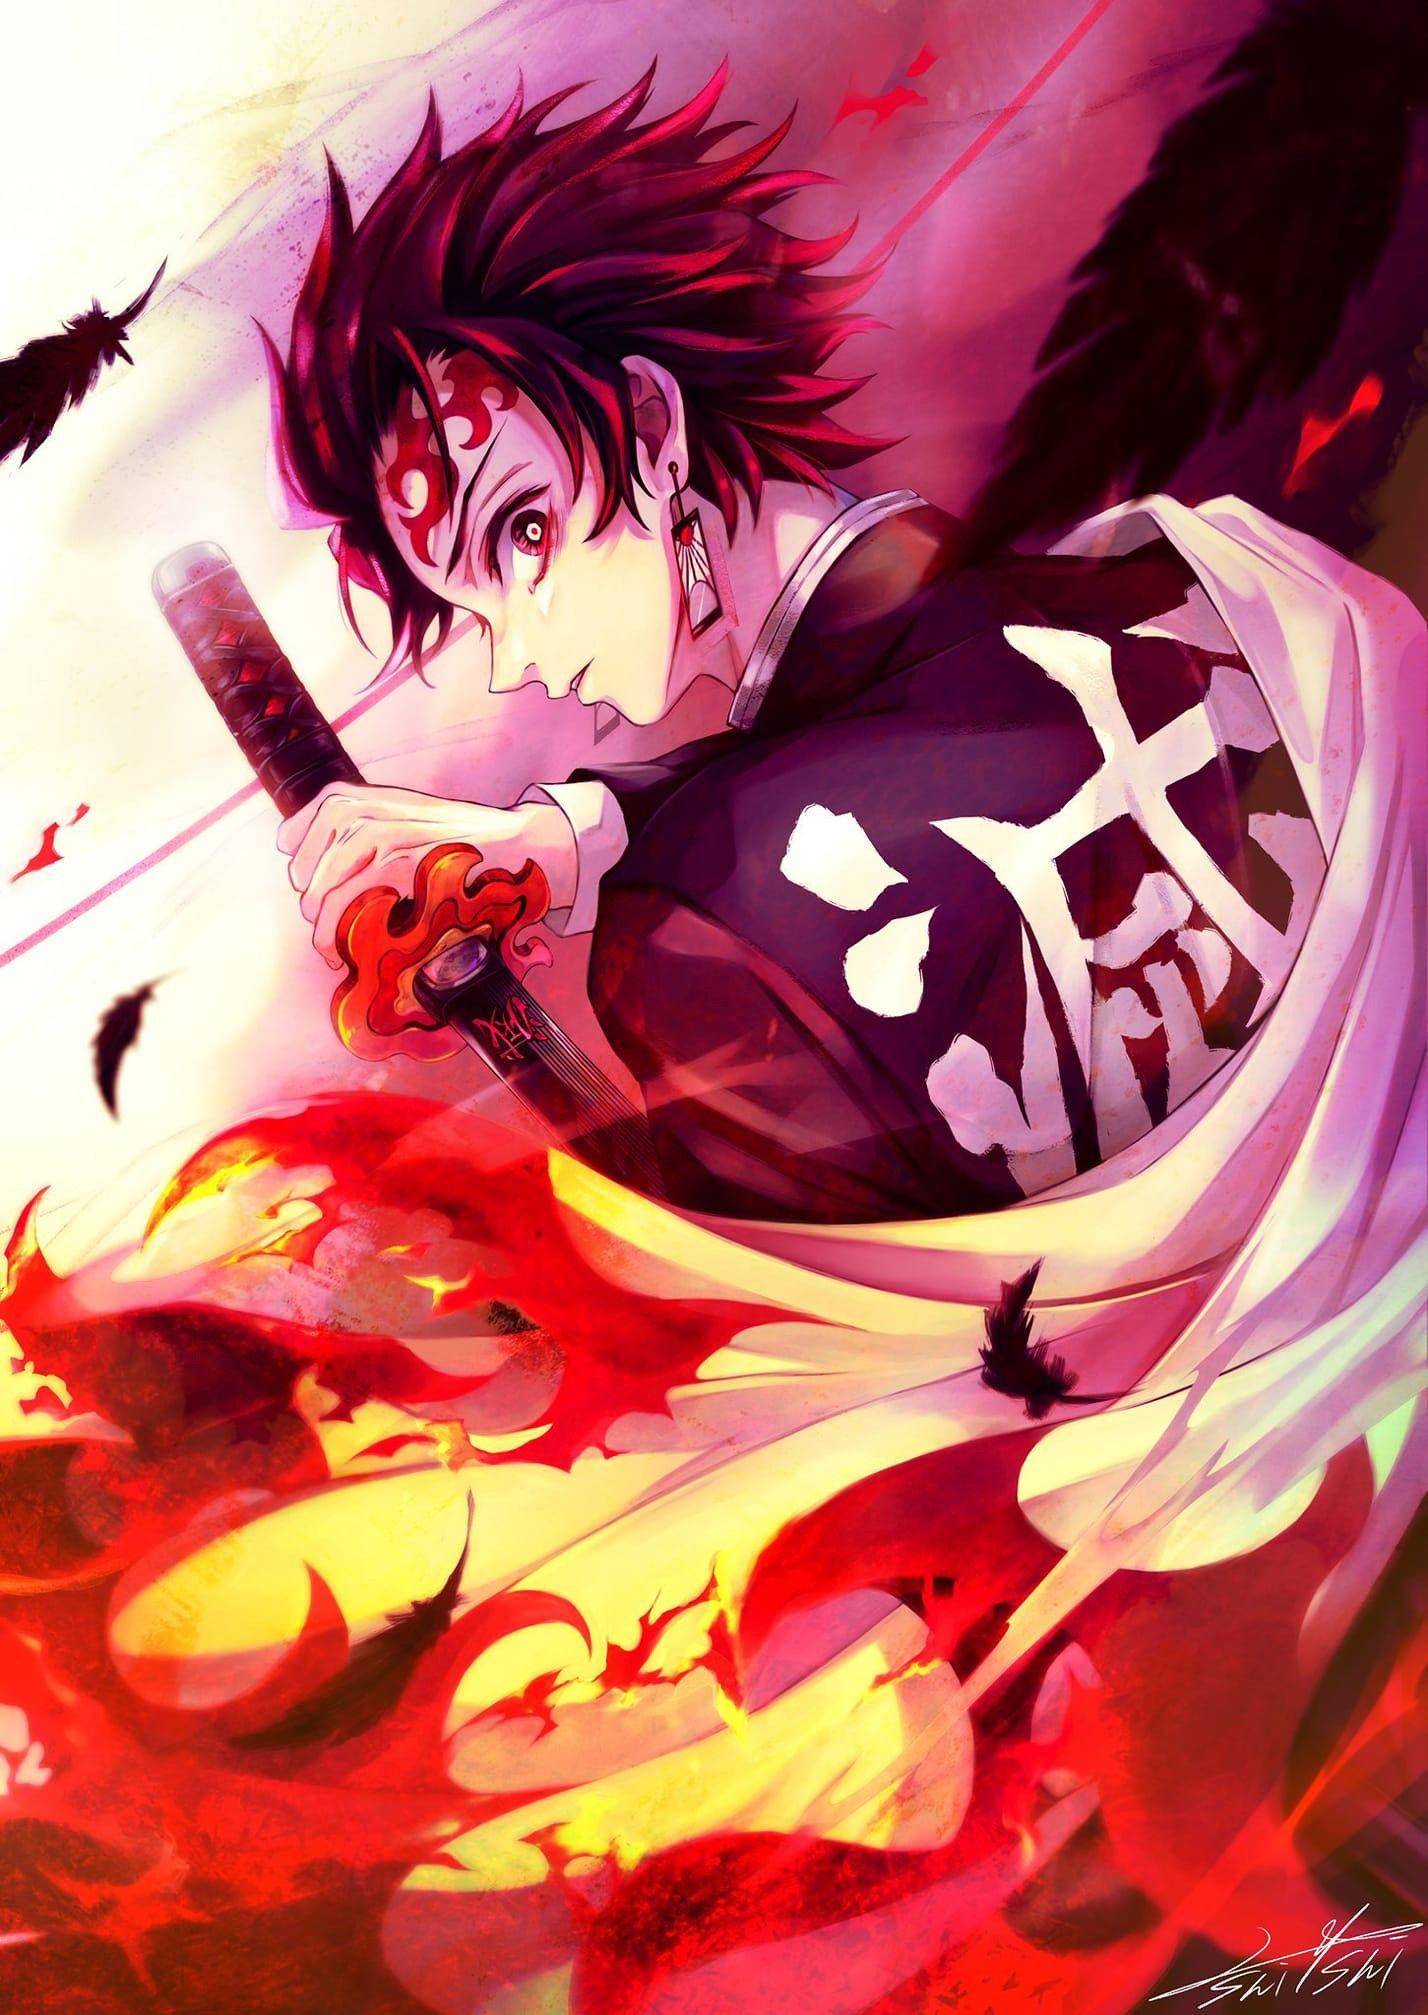 1428 x 2015 · jpeg - Pin by Yashraj on Demon Slayer : Kimetsu no yaiba | Anime demon, Anime ...